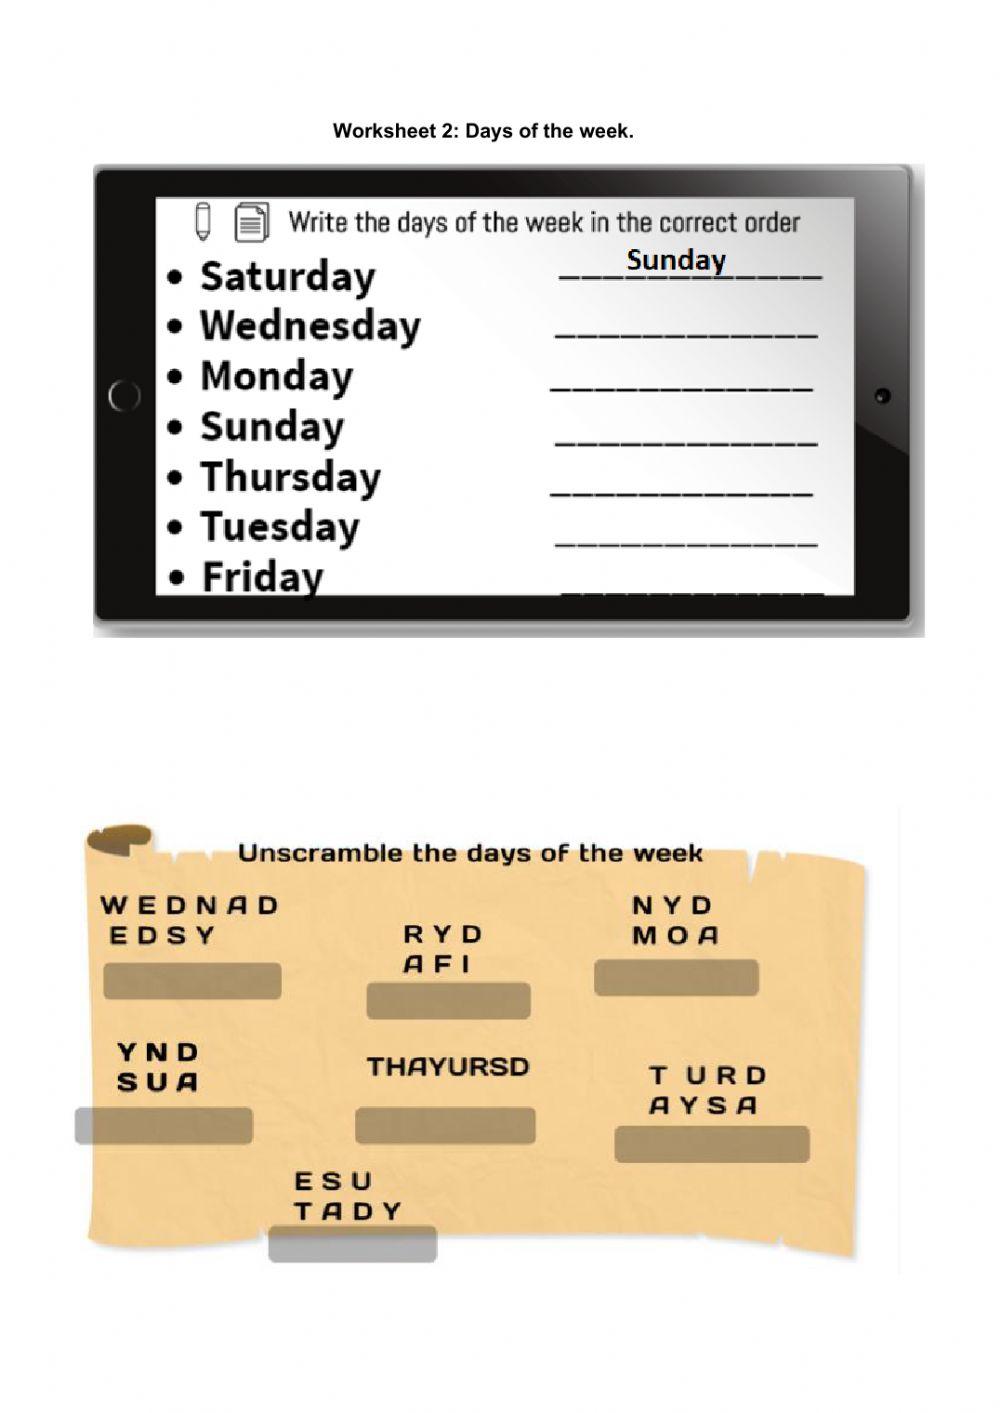 Days of the week - worksheet 2